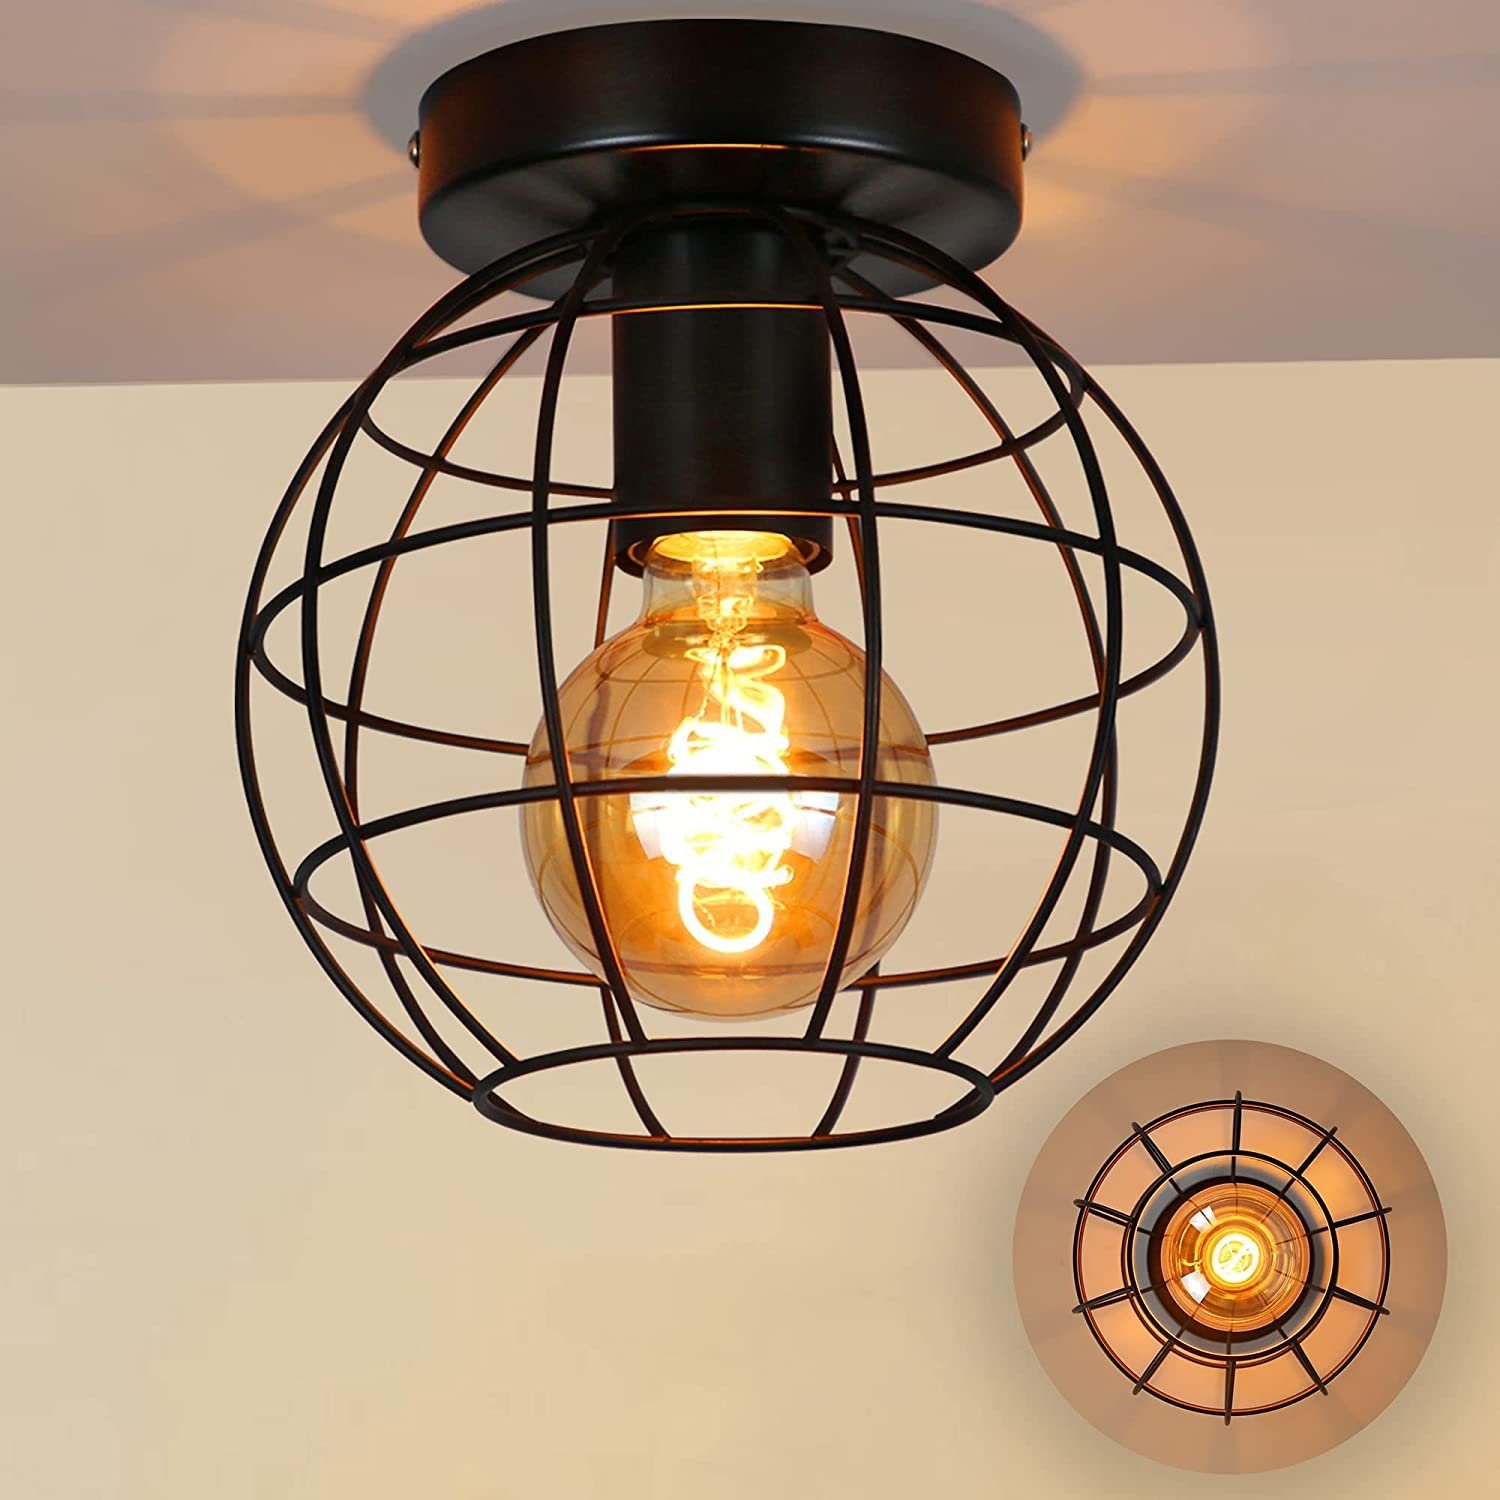 E27 Fassung max 40 Watt Briloner Leuchten – Retro Deckenleuchte mit Holz 30 cm Durchmesser Deckenlampe vintage Schlafzimmerlampe industrial schwarz